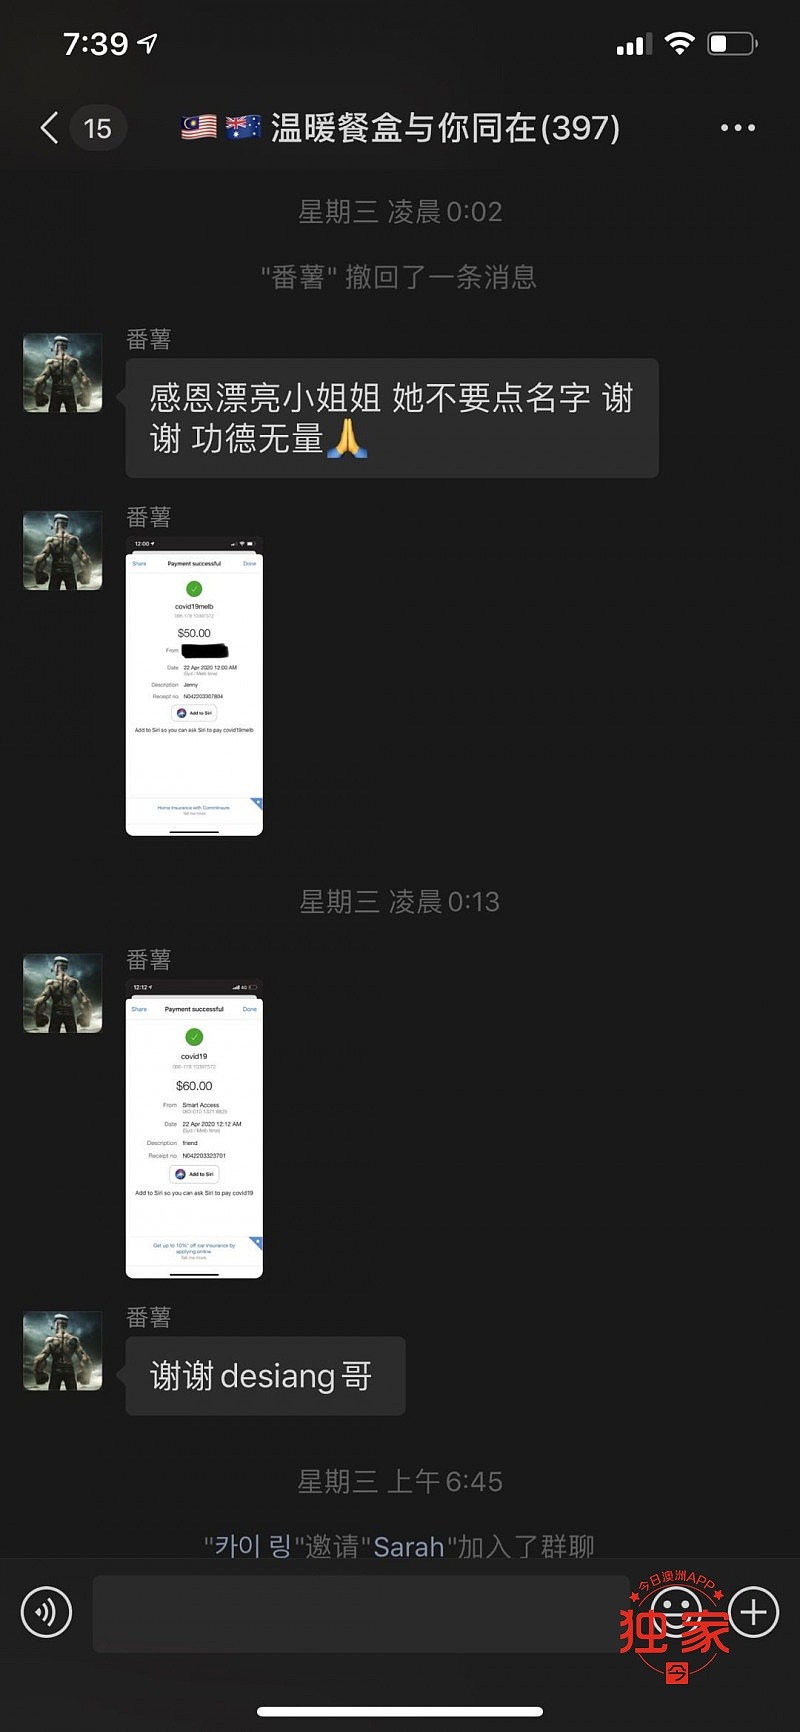 WeChat Image_20200428194916.jpg,12